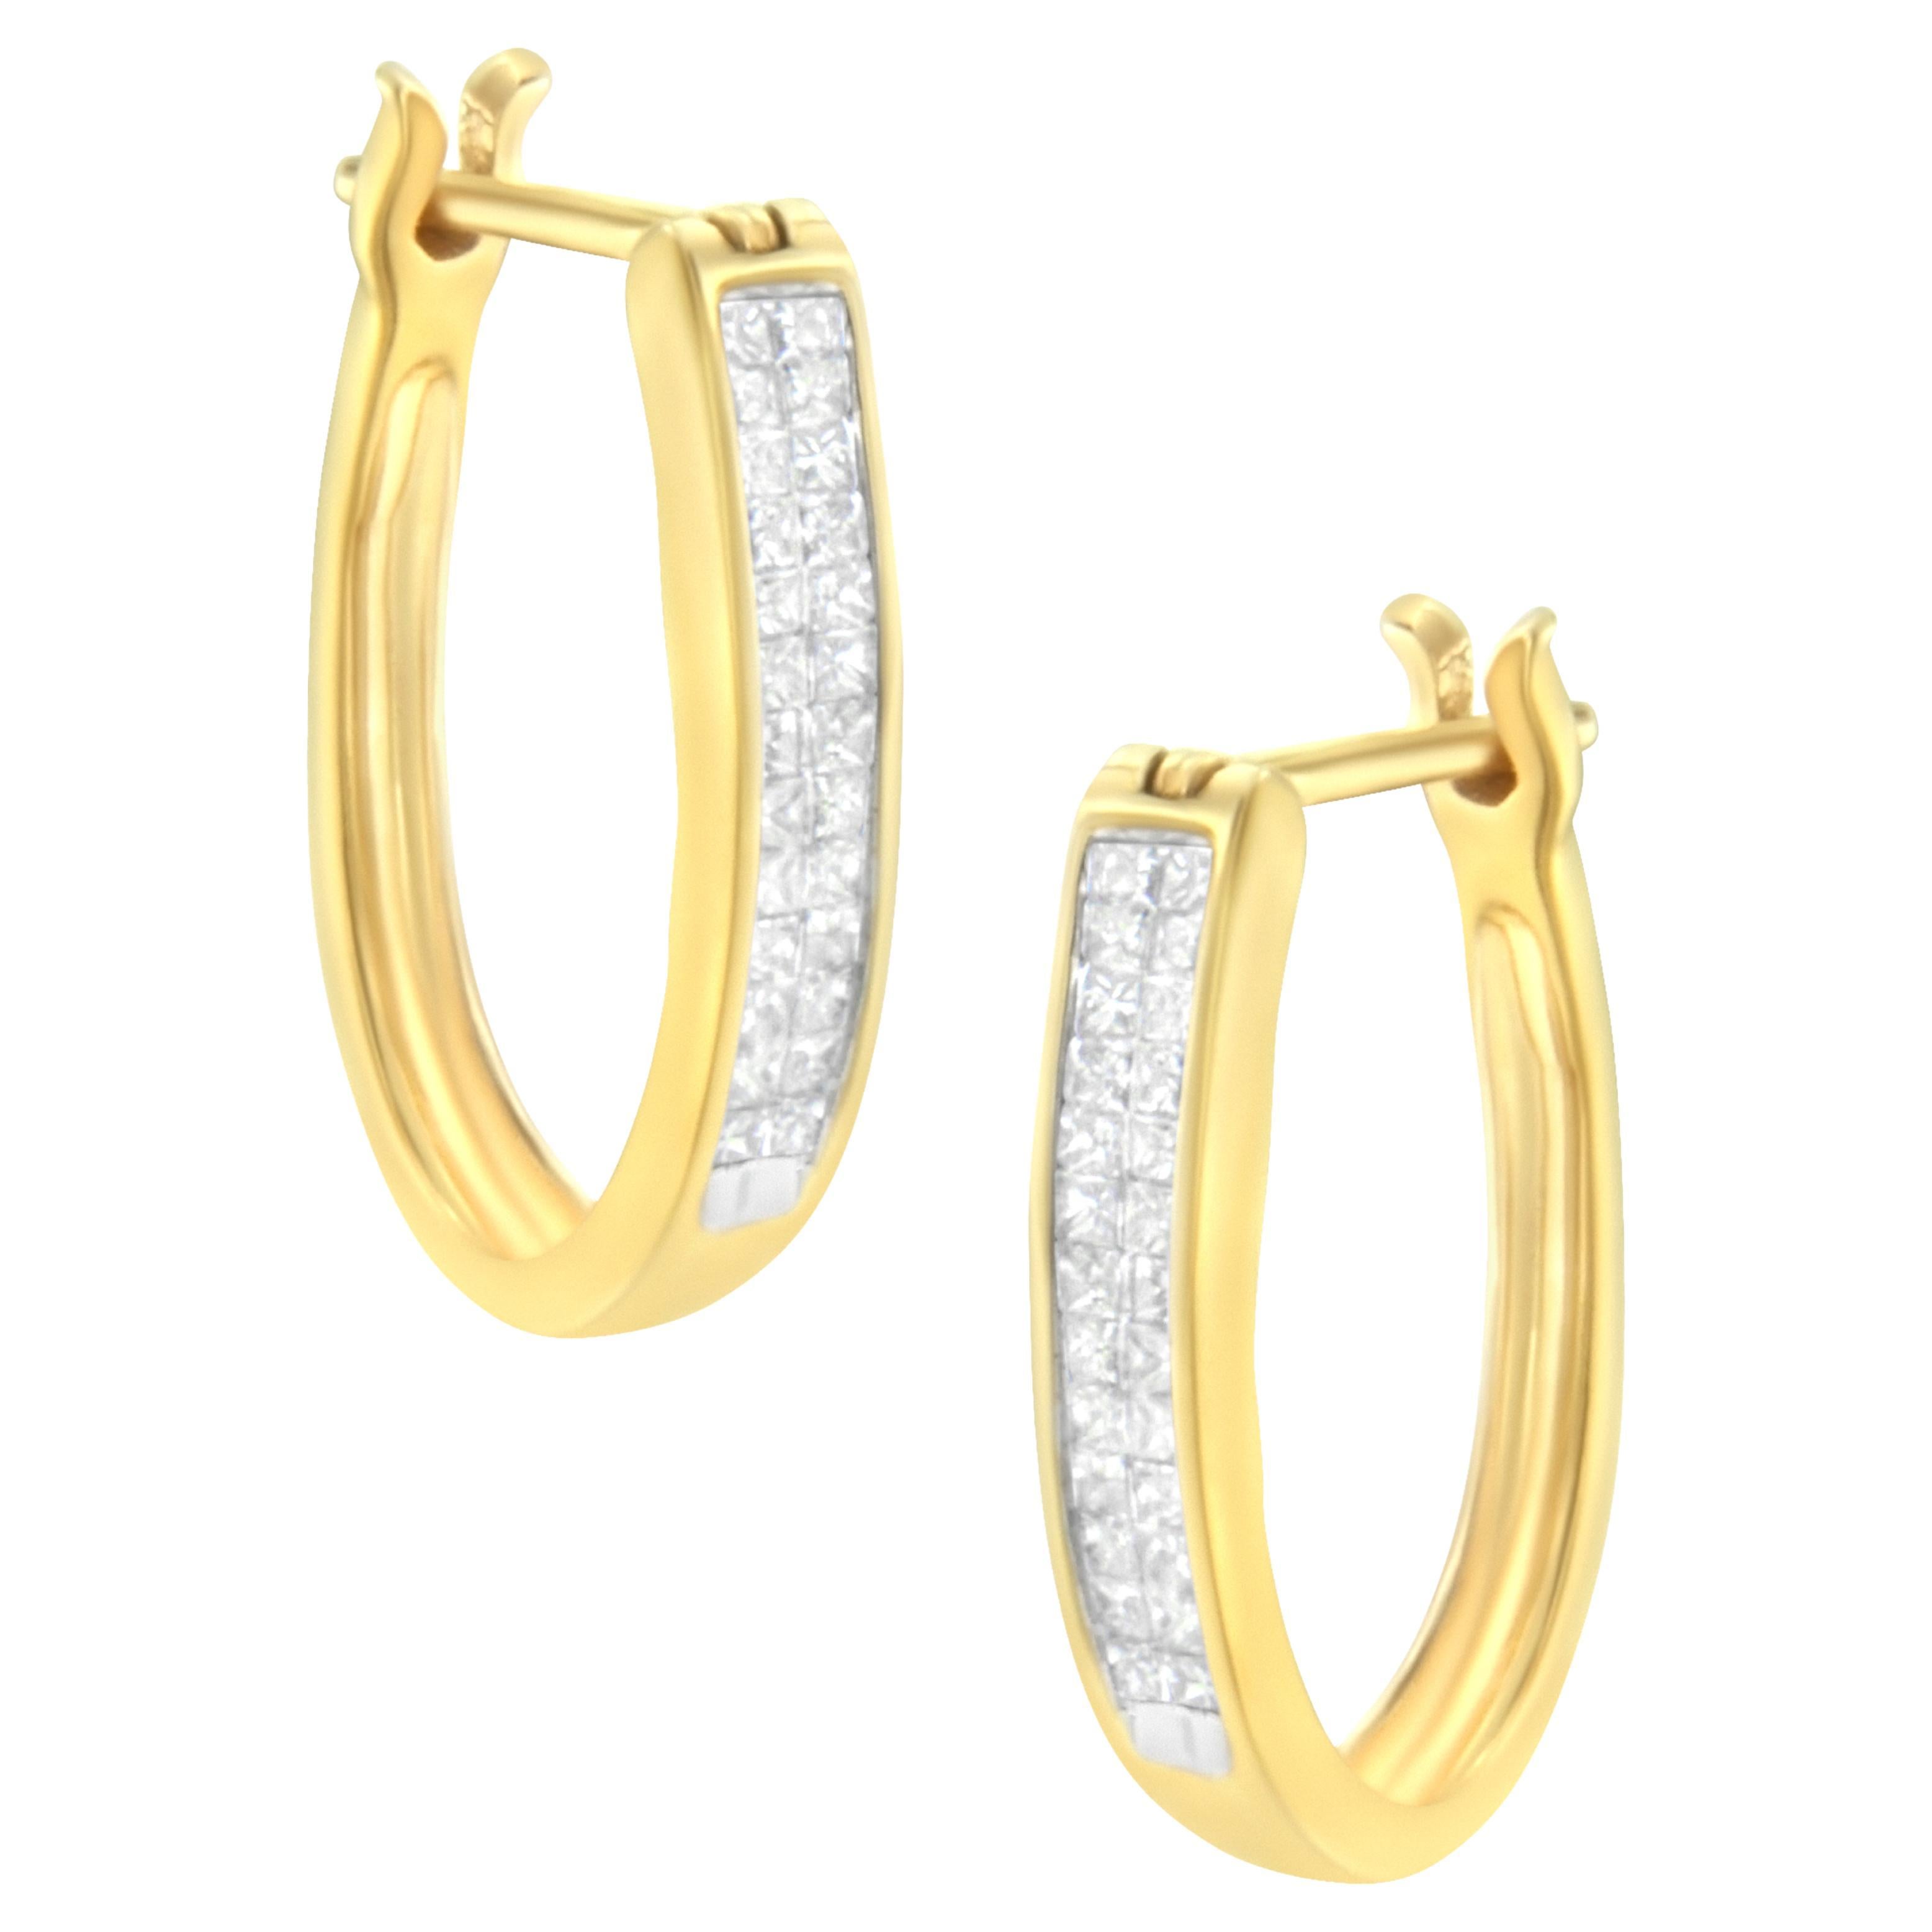 10K Yellow Gold 1/2 Carat Invisible Set Princess-Cut Diamond Hoop Earrings